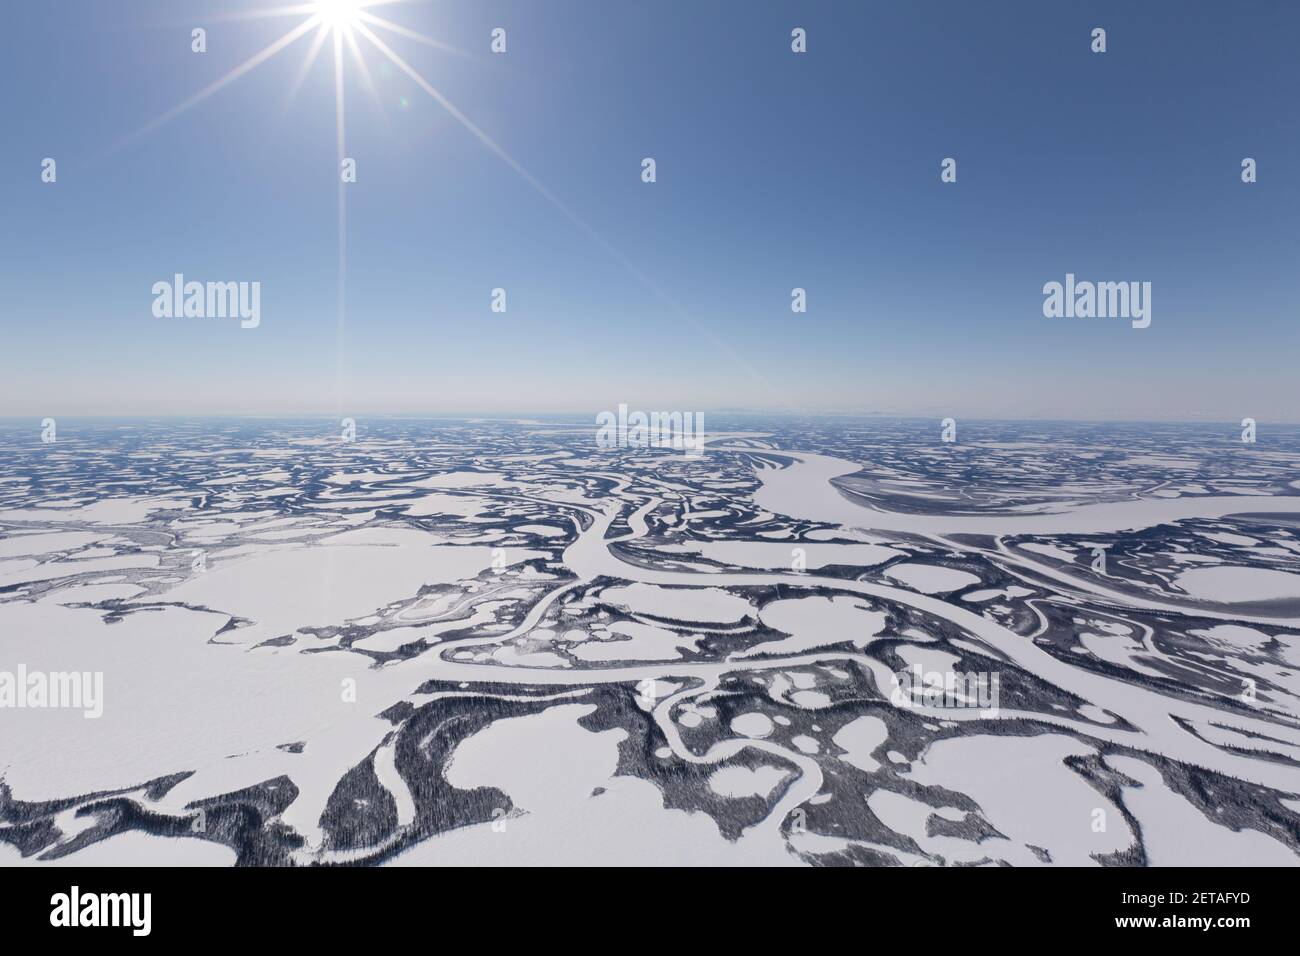 Vue aérienne en hiver du paysage gelé du delta de Beaufort, région d'Inuvik, Territoires du Nord-Ouest, Arctique canadien. Banque D'Images